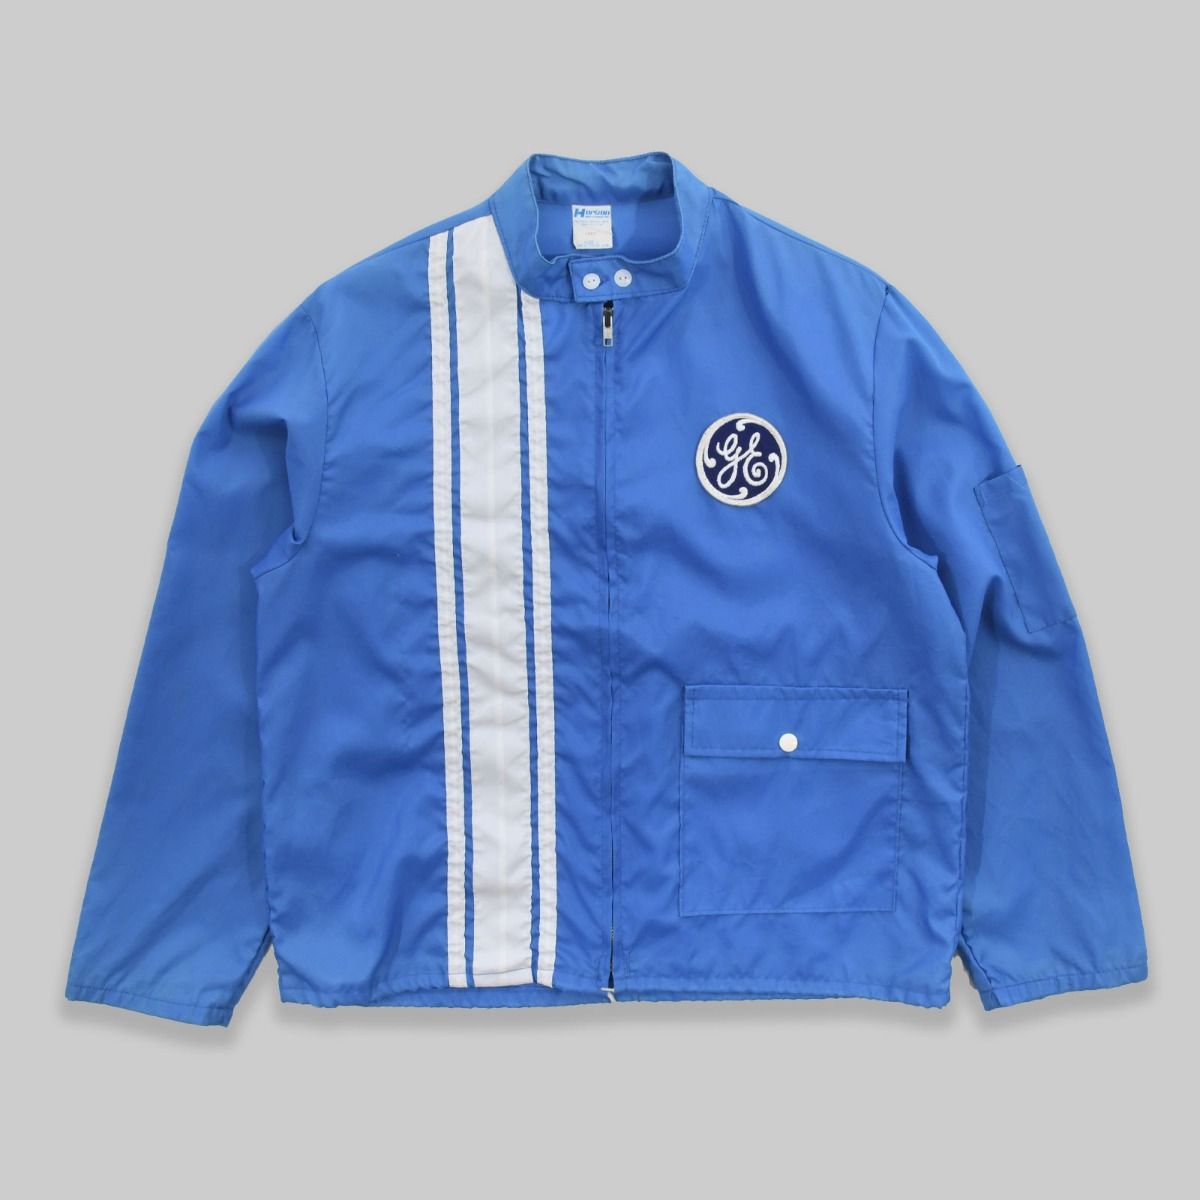 General Electric 1980s Lightweight Zip Up Jacket